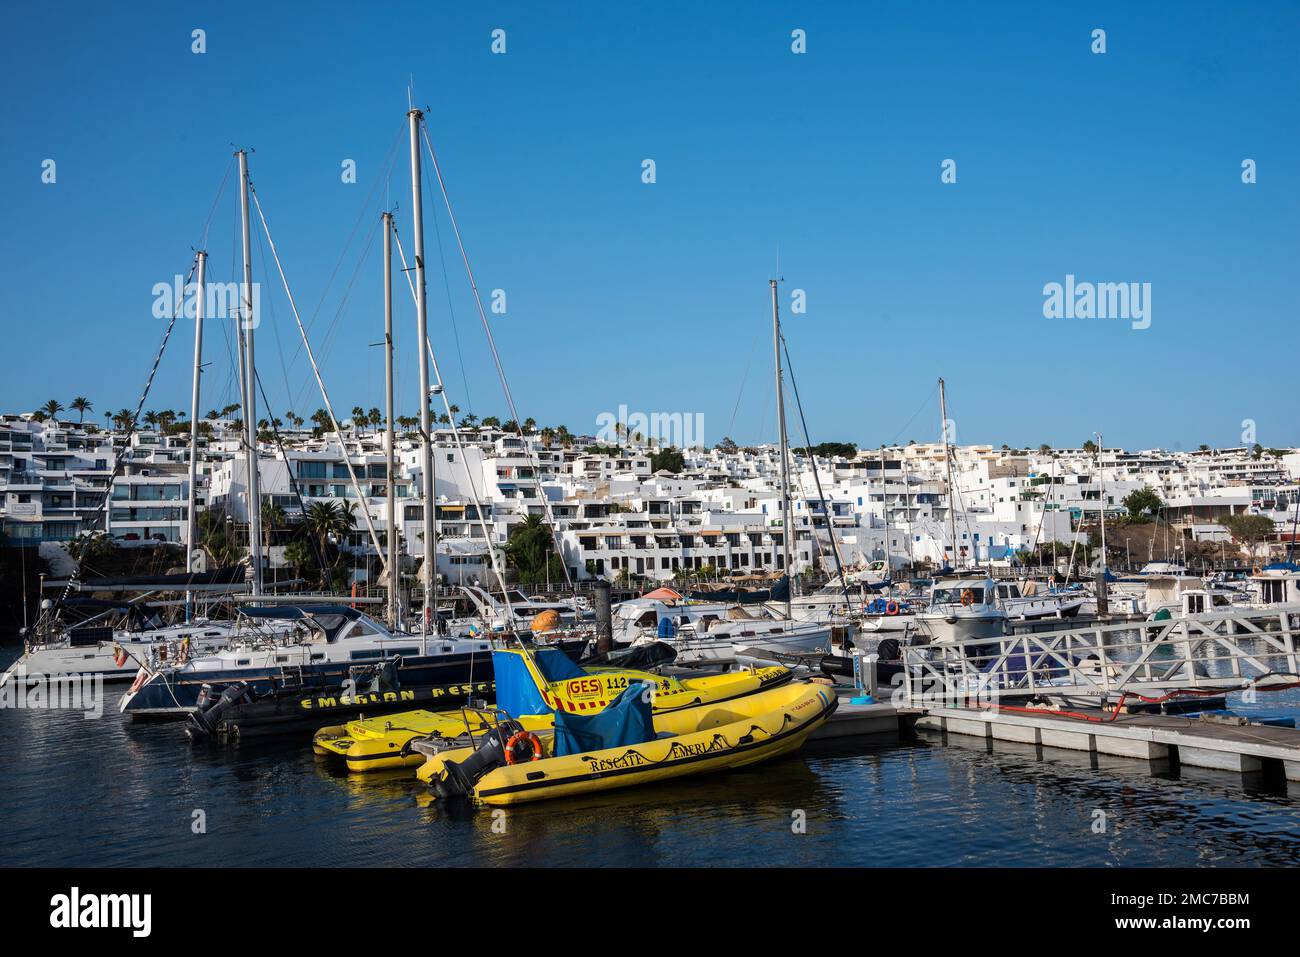 Bateaux et embarcations de sauvetage dans le port, Puerto del Carmen, Lanzarote, îles Canaries, Espagne Banque D'Images